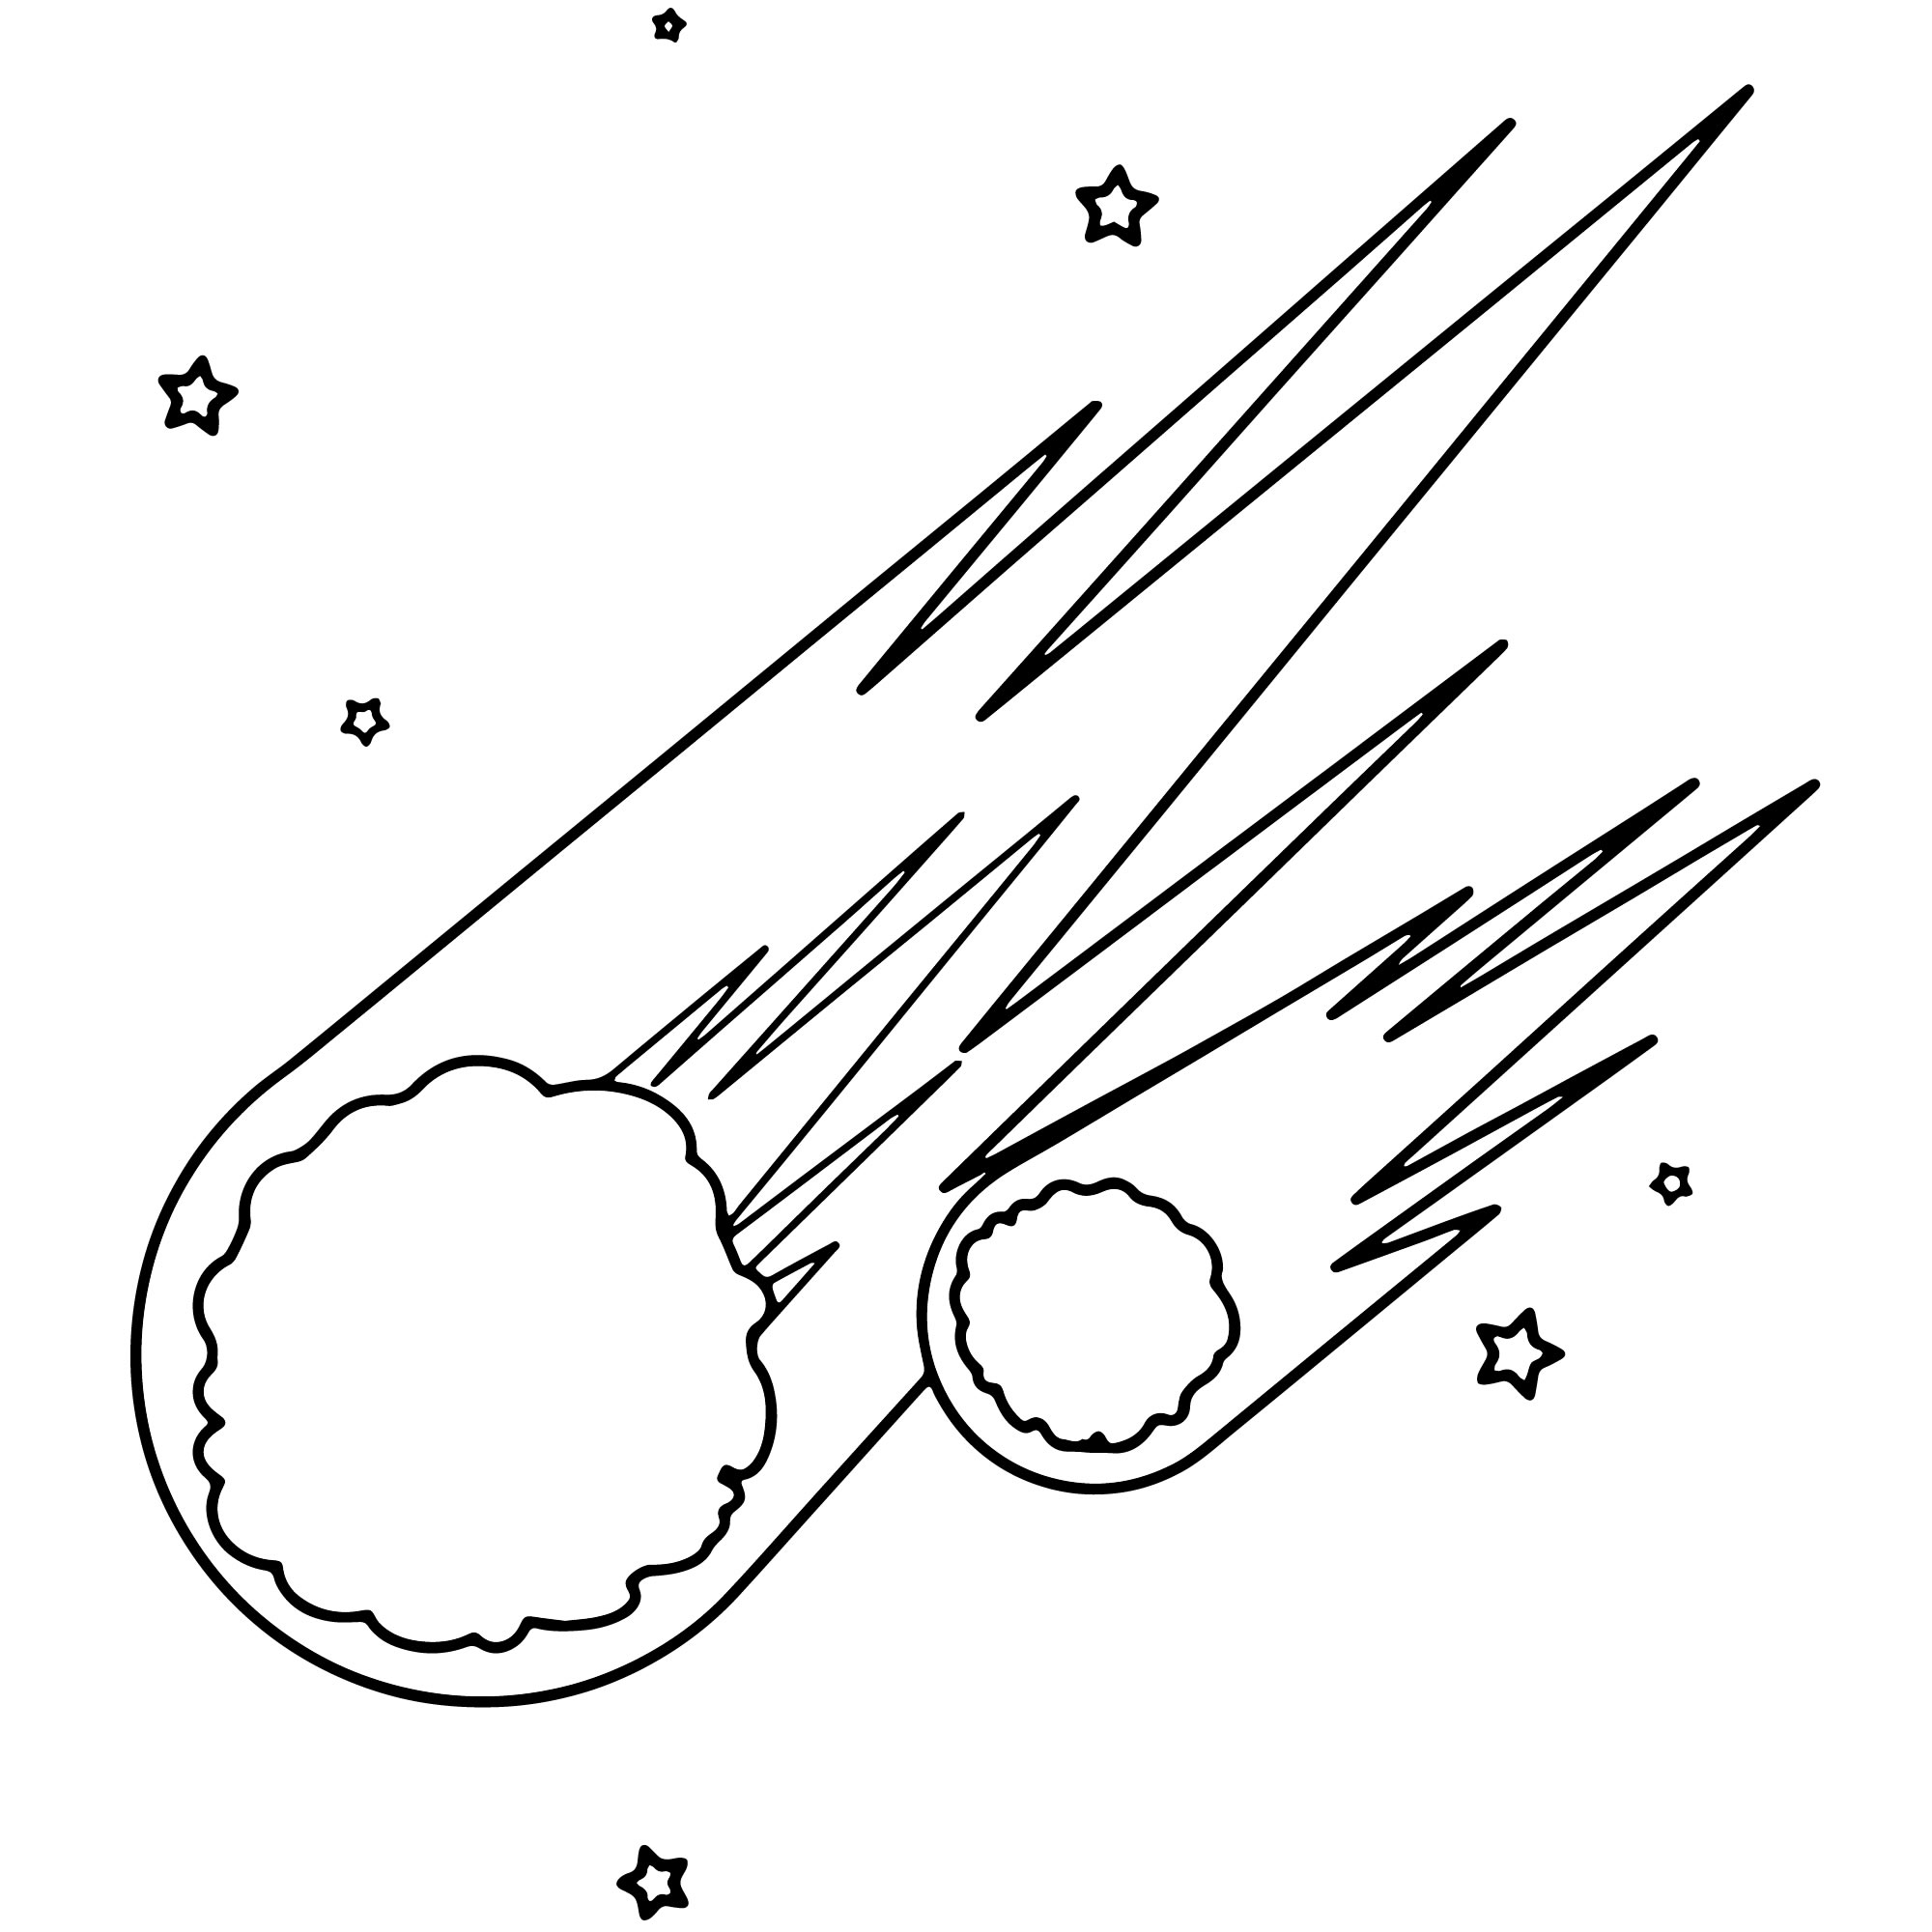 Комета рисунок Изображения – скачать бесплатно на Freepik